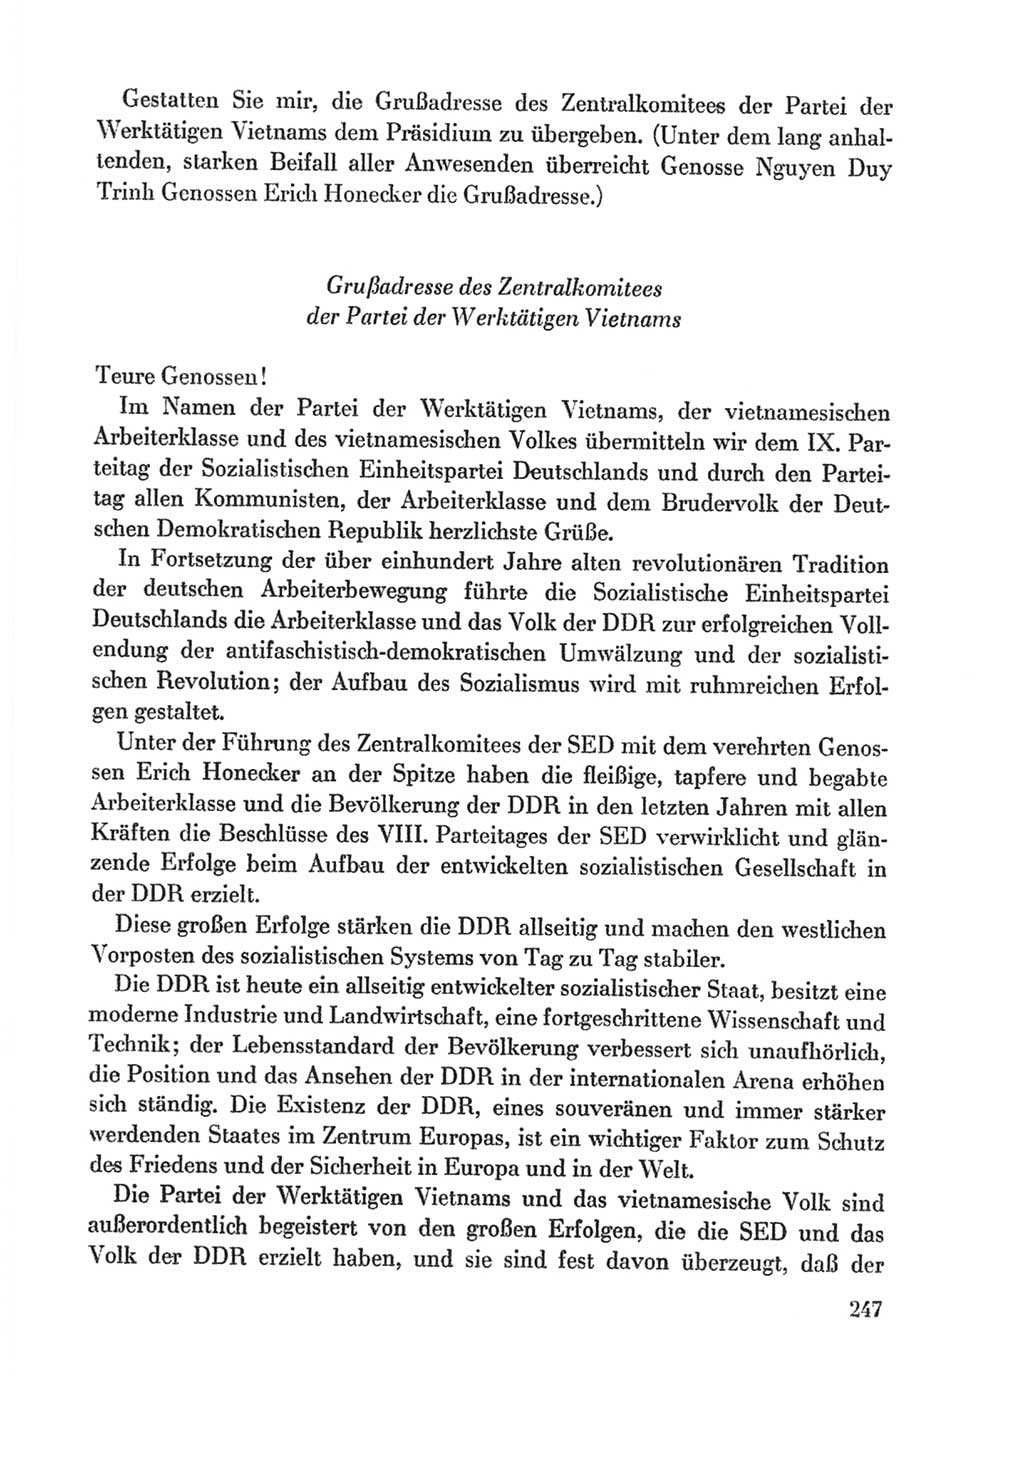 Protokoll der Verhandlungen des Ⅸ. Parteitages der Sozialistischen Einheitspartei Deutschlands (SED) [Deutsche Demokratische Republik (DDR)] 1976, Band 1, Seite 247 (Prot. Verh. Ⅸ. PT SED DDR 1976, Bd. 1, S. 247)